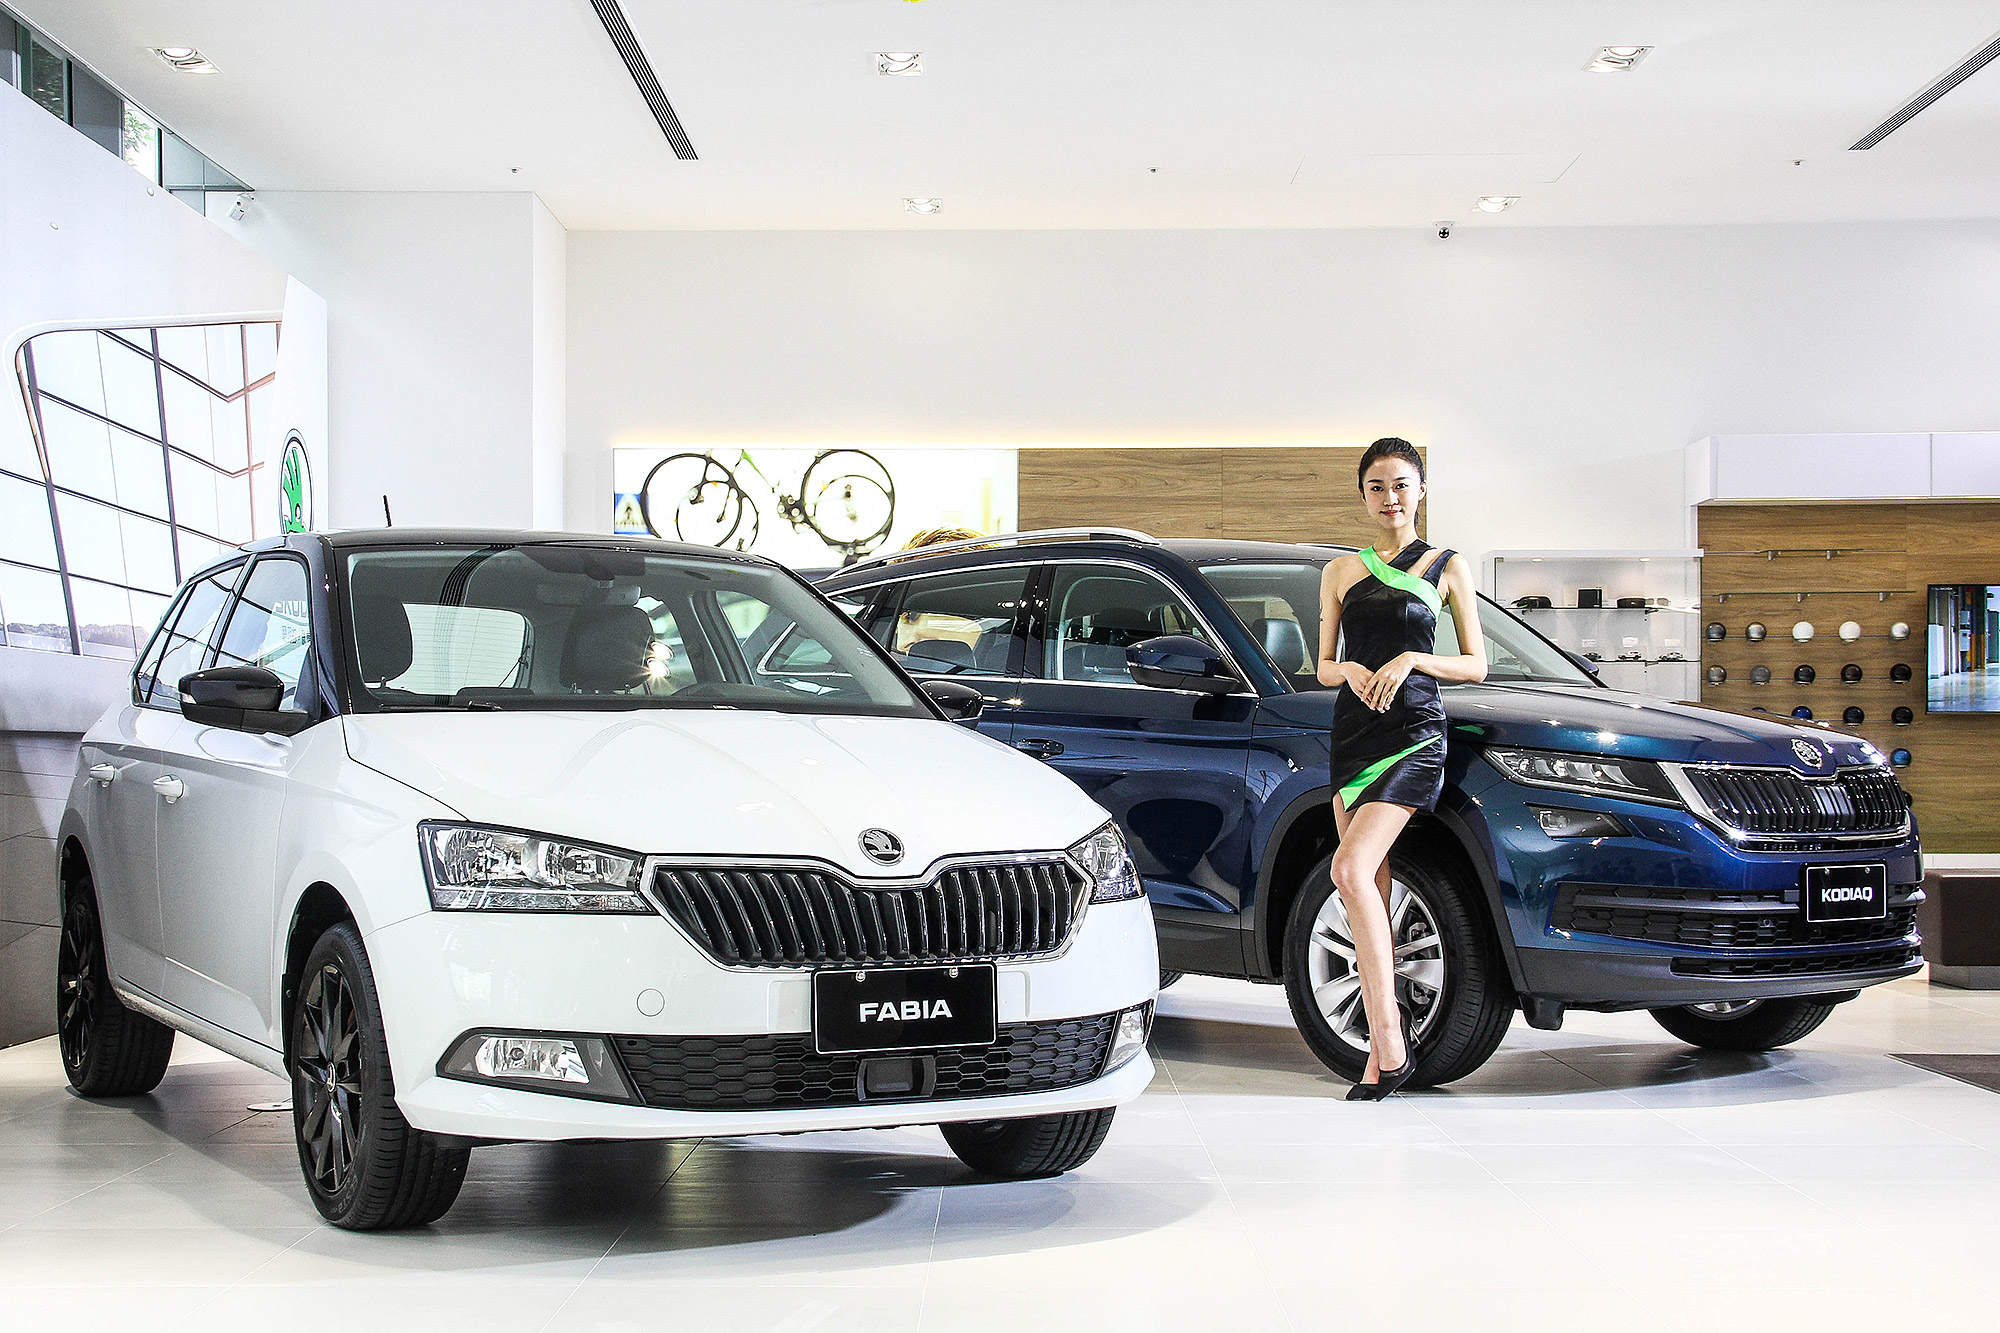 Škoda Taiwan 在車展也將提供不同以往的體驗服務。